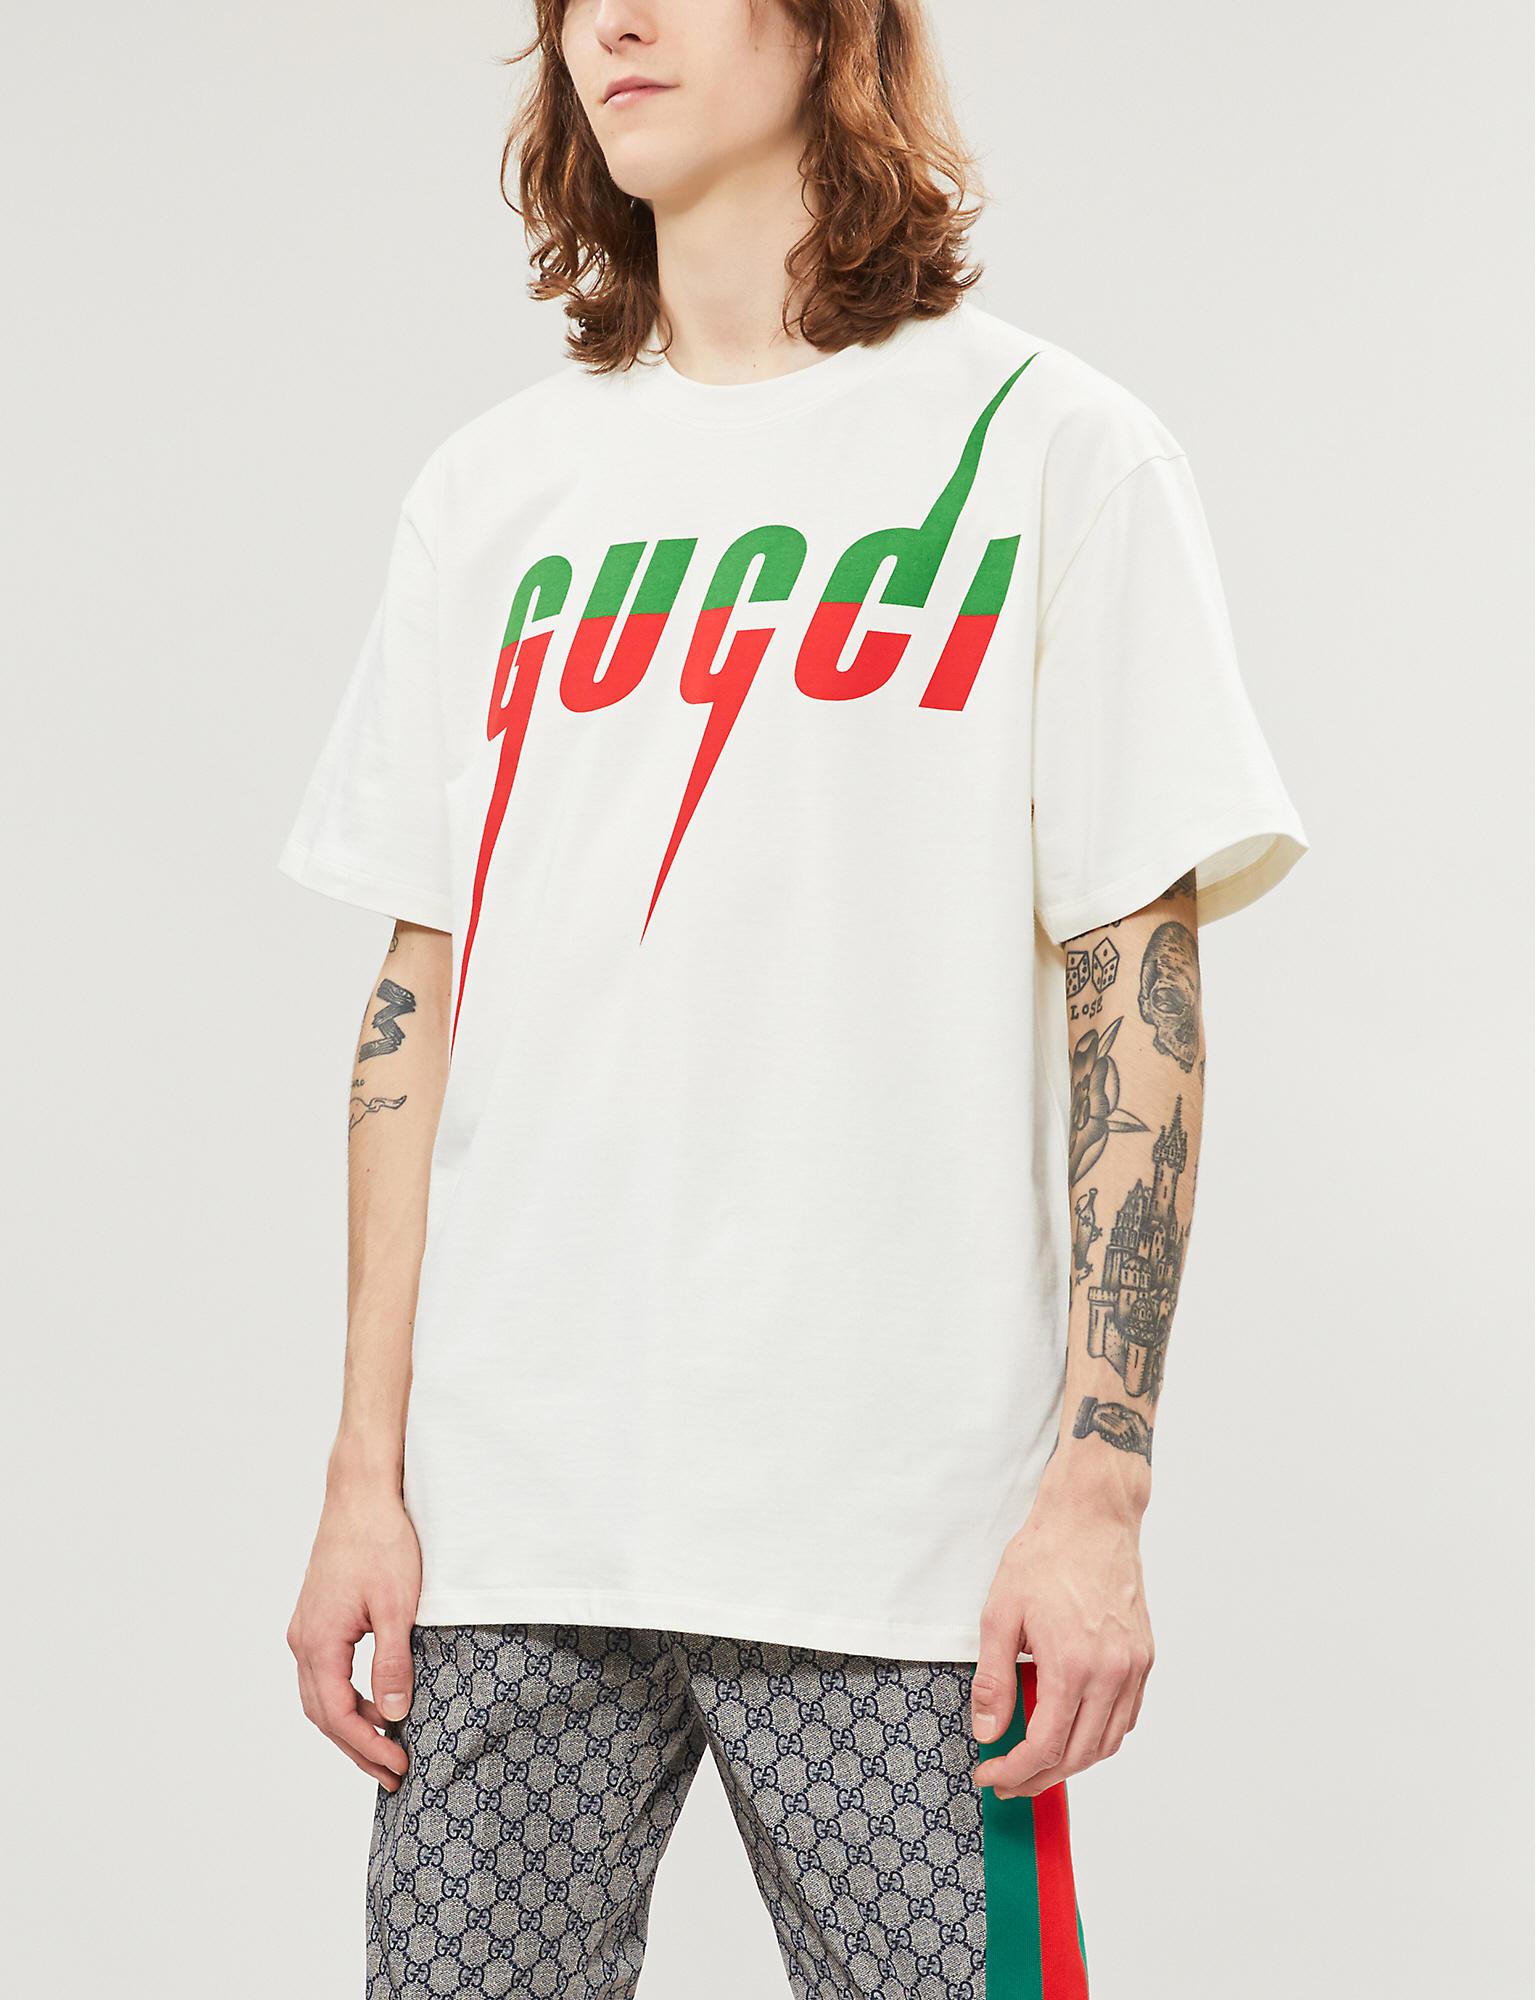 gucci printed shirts